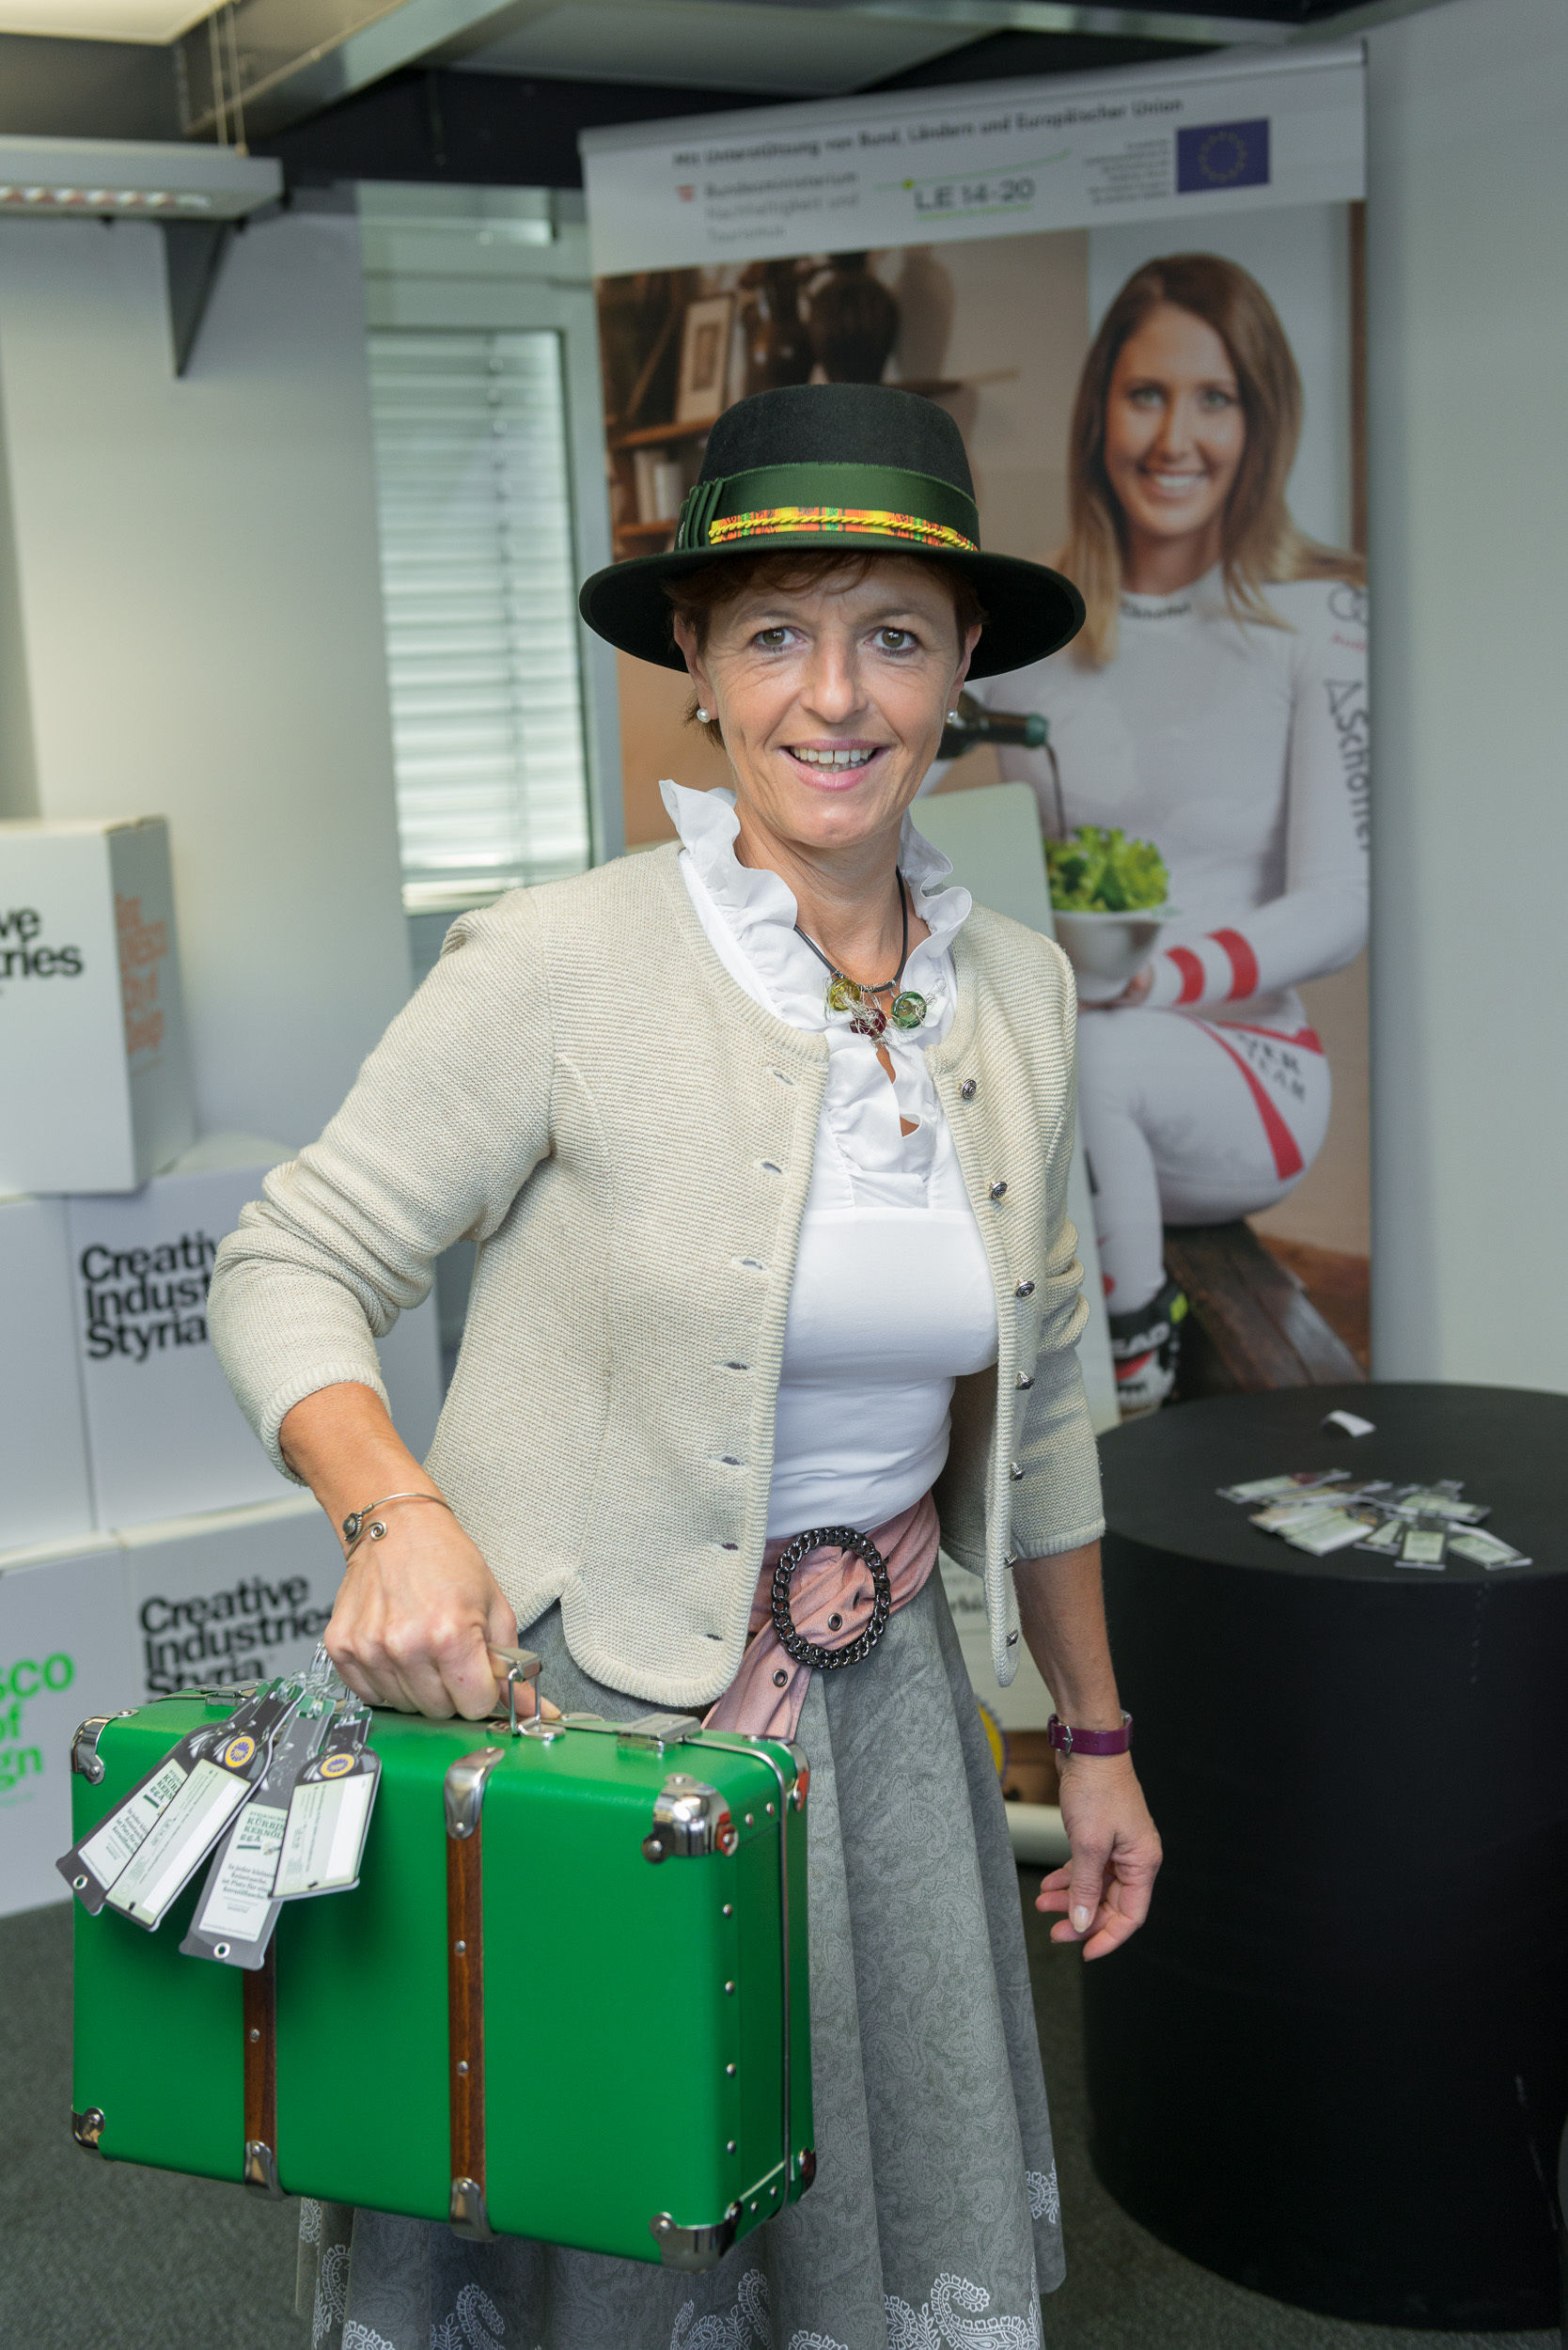 In jeder kleinen Reisetasche ist Platz für eine Kernölflasche. Vizepräsidentin Maria Pein mit den Kofferanhängern in Kernölflaschen-Form. © Kristoferitsch